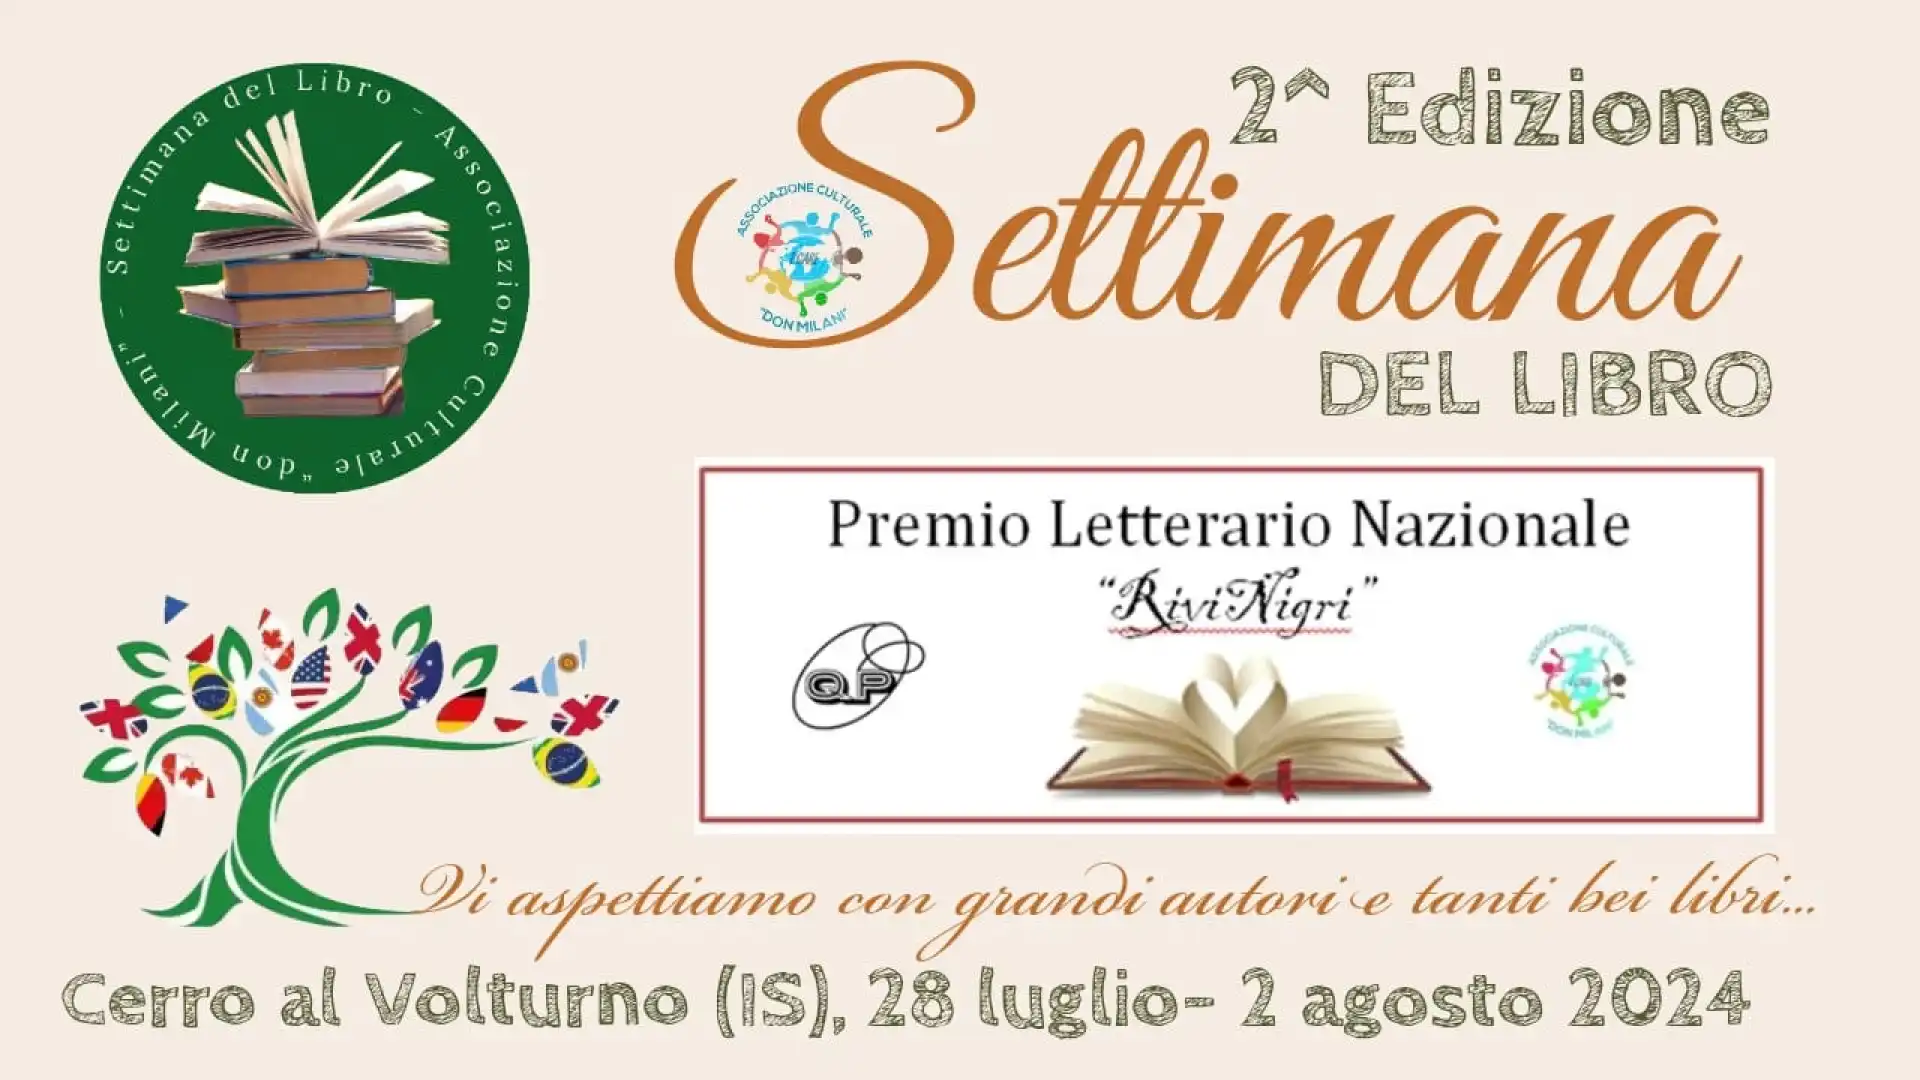 Cerro al Volturno: dal 28 luglio al 2 agosto appuntamento con la Seconda edizione della “Settimana del Libro”.